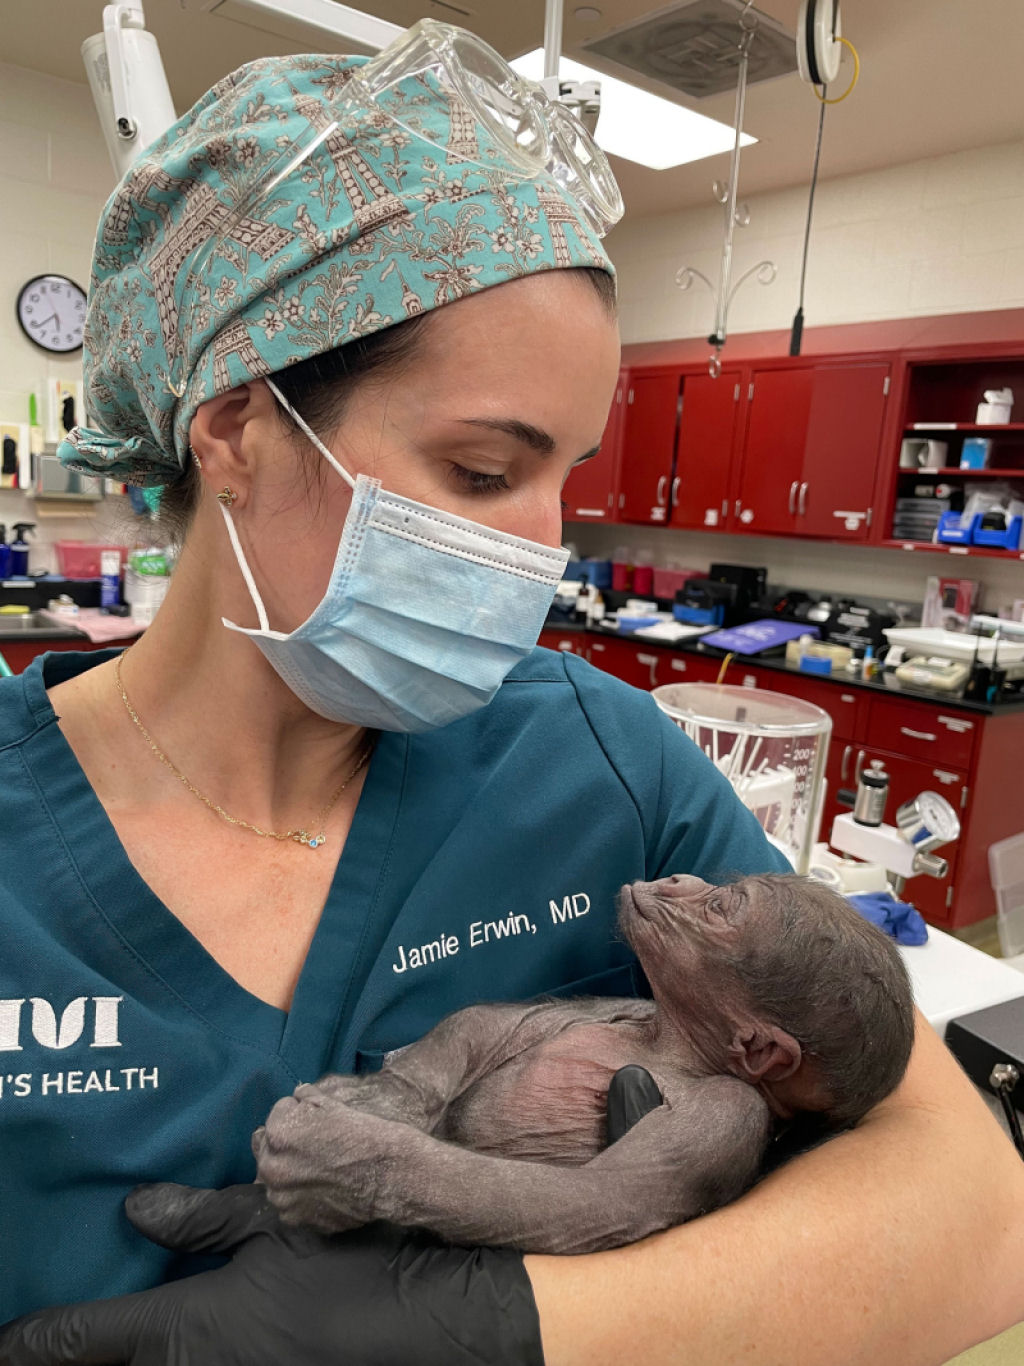 Zoolgico do Texas anuncia nascimento bem-sucedido de gorila prematuro por meio de cesariana de emergncia